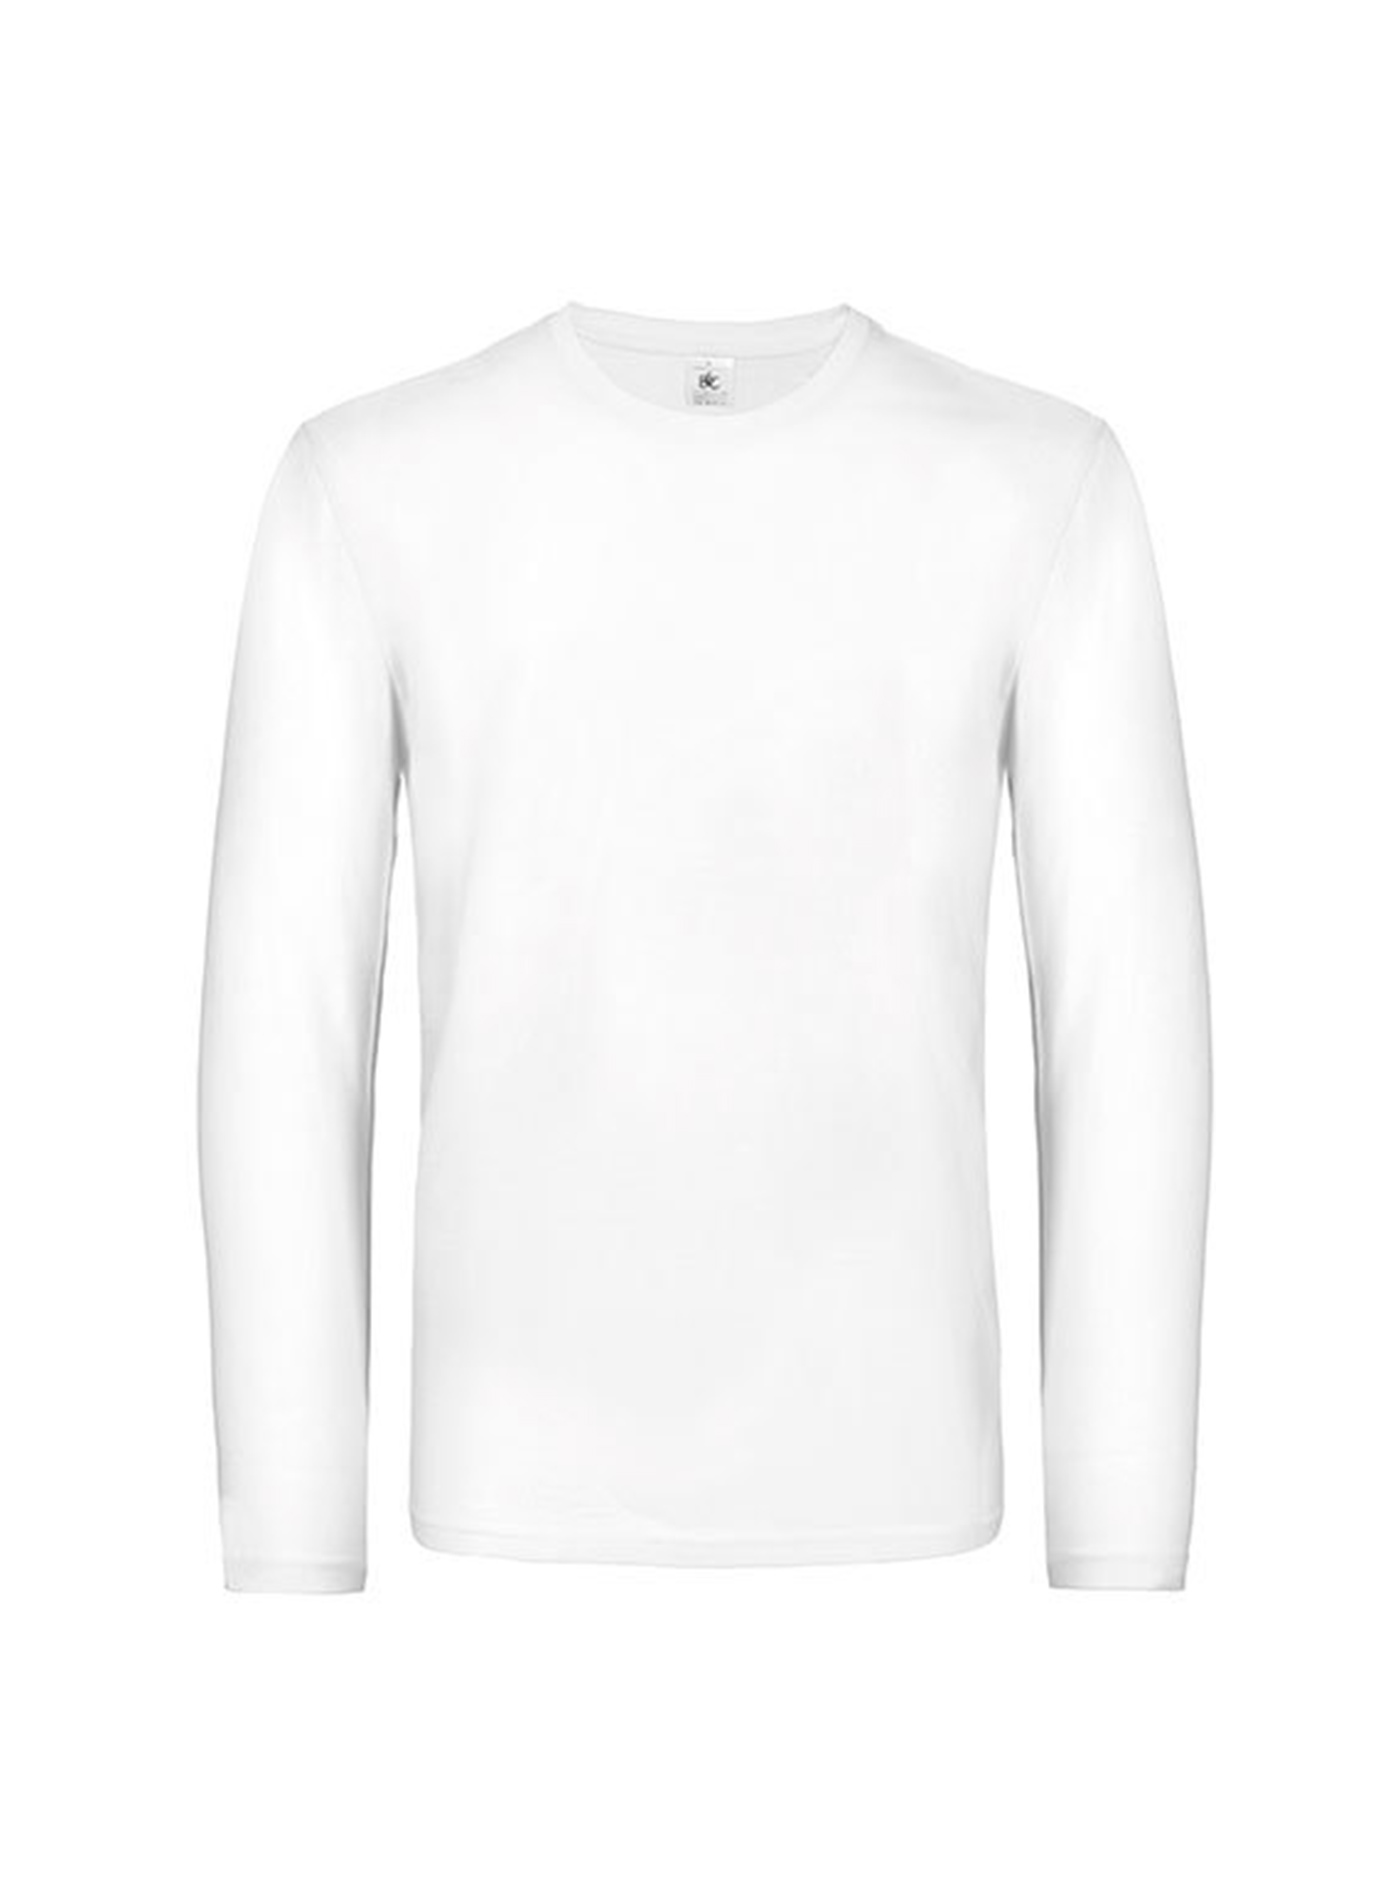 Pánské tričko s dlouhým rukávem B&C Collection - Bílá M